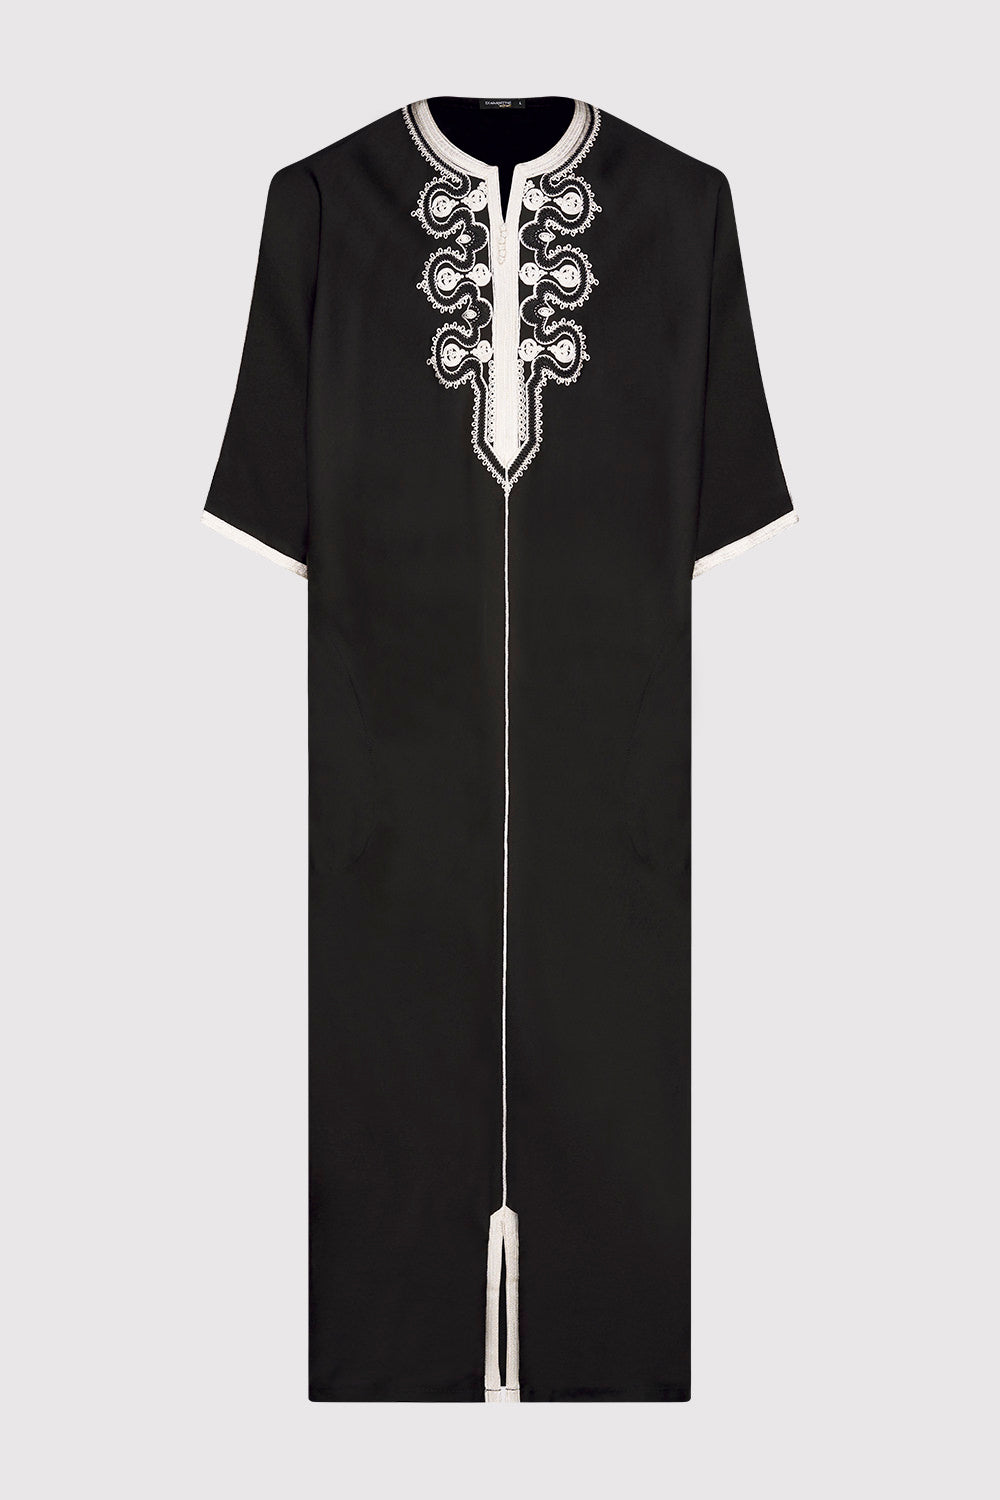 Gandoura Ihab Short Sleeve Embroidered Men's Long Robe Thobe in Black